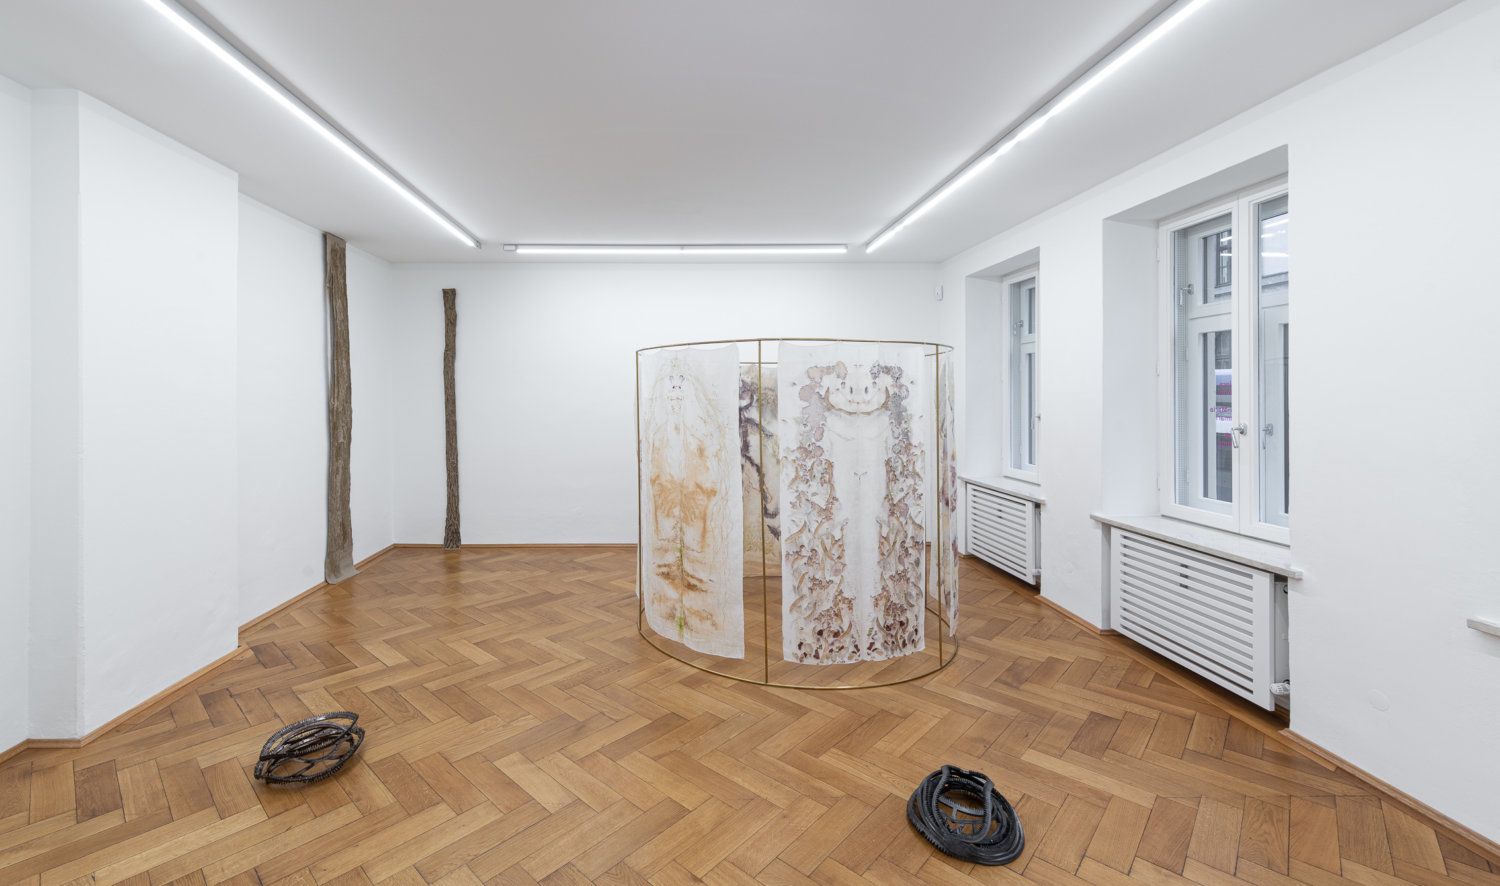 Installationsansicht der Ausstellung "On Survival". An der Wand zwei Skulpturen von Helene Appel, auf dem Boden zwei Fallen-artige Skulpturen von Hanna-Maria Hammari. Außerdem steht im Raum eine Skulptur mit Stoffbahnen von Chiara Camoni.